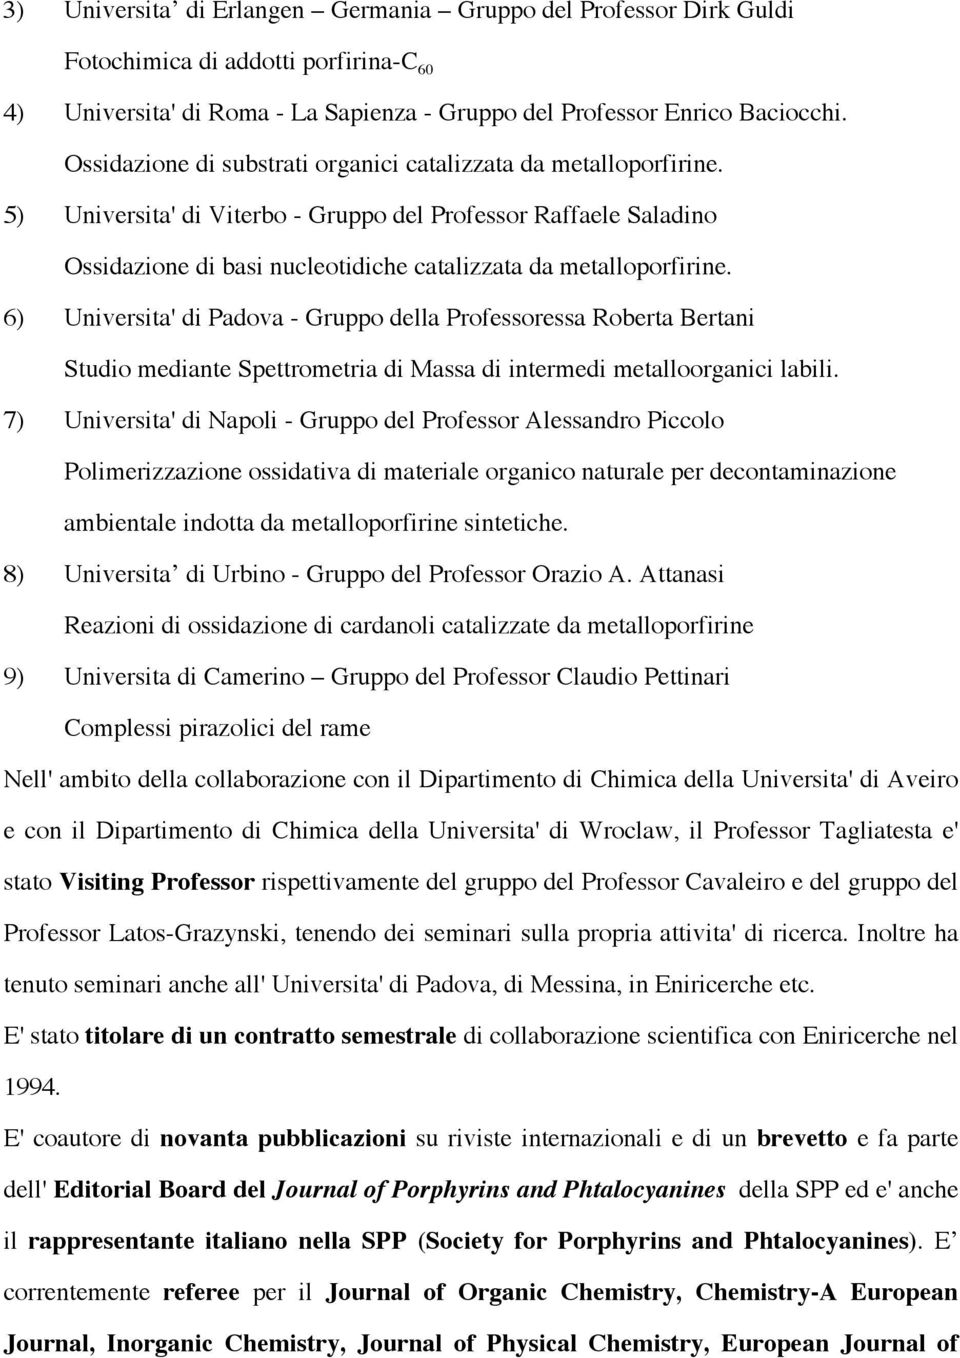 6) Universita' di Padova - Gruppo della Professoressa Roberta Bertani Studio mediante Spettrometria di Massa di intermedi metalloorganici labili.